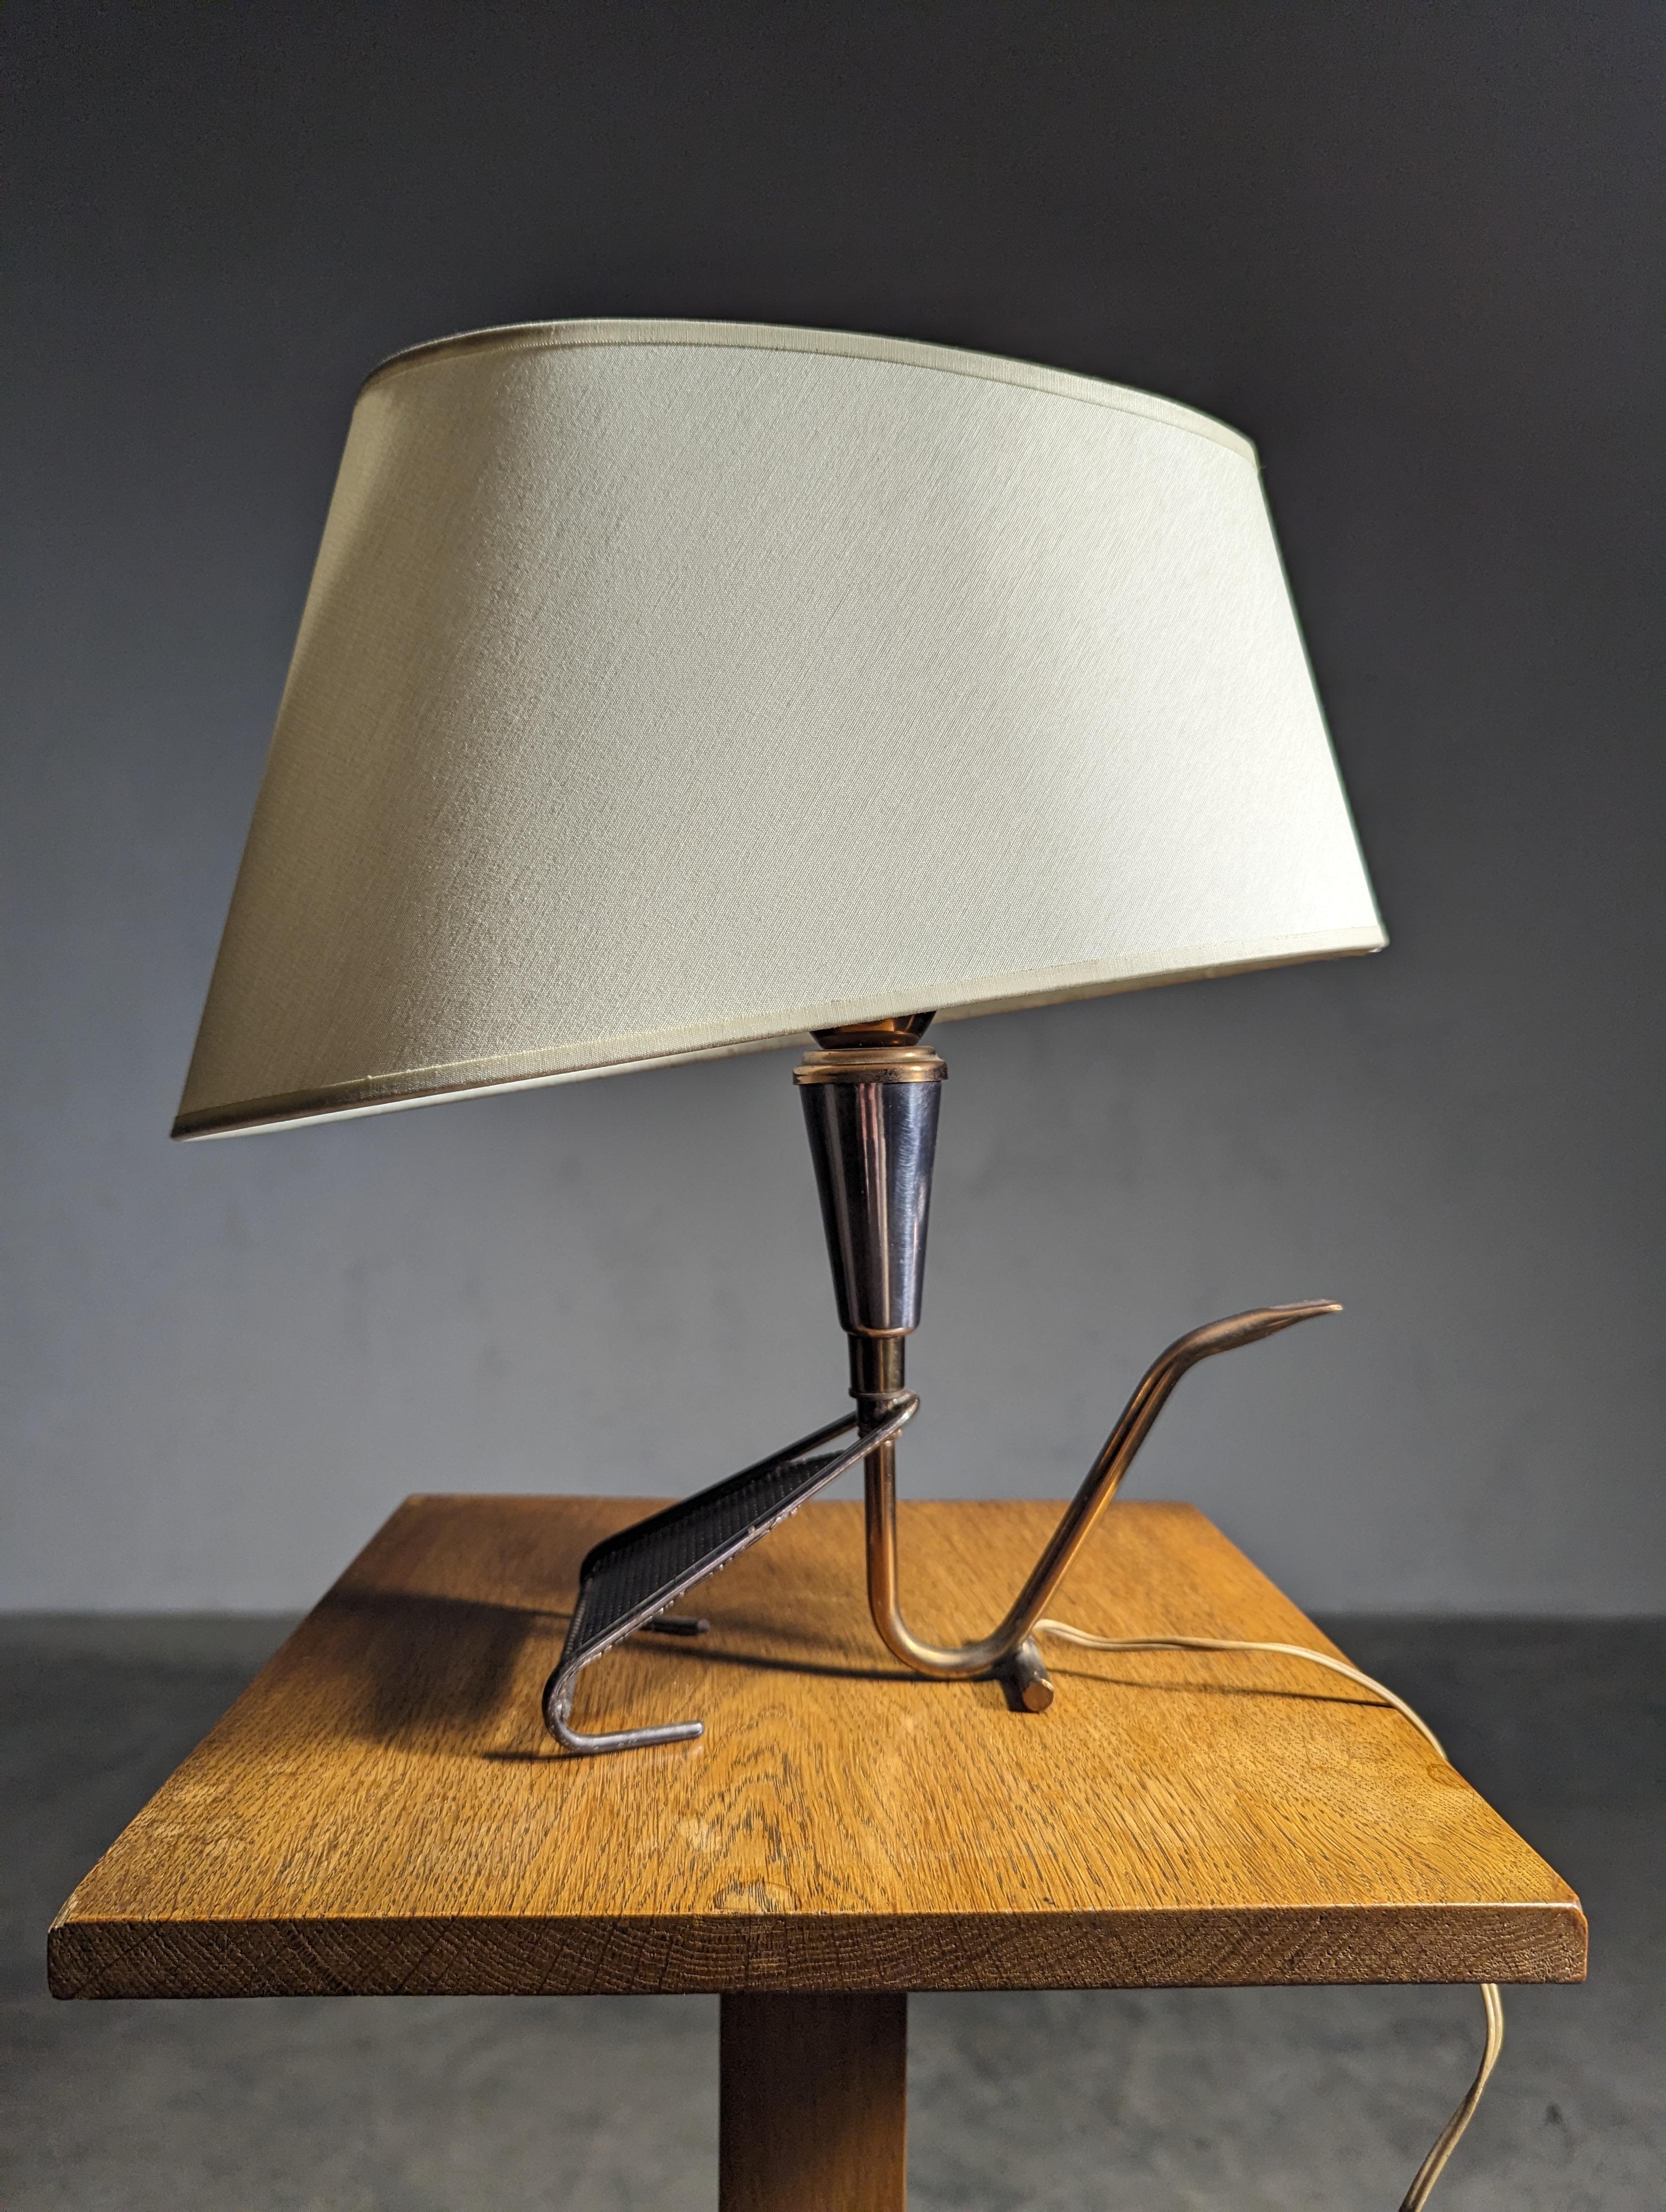 Französische Tischlampe in Messing aus den 50er Jahren von Maison Arlus mit Lampenschirm.
Hergestellt aus Messing und Metallteilen mit einer Patina aus 